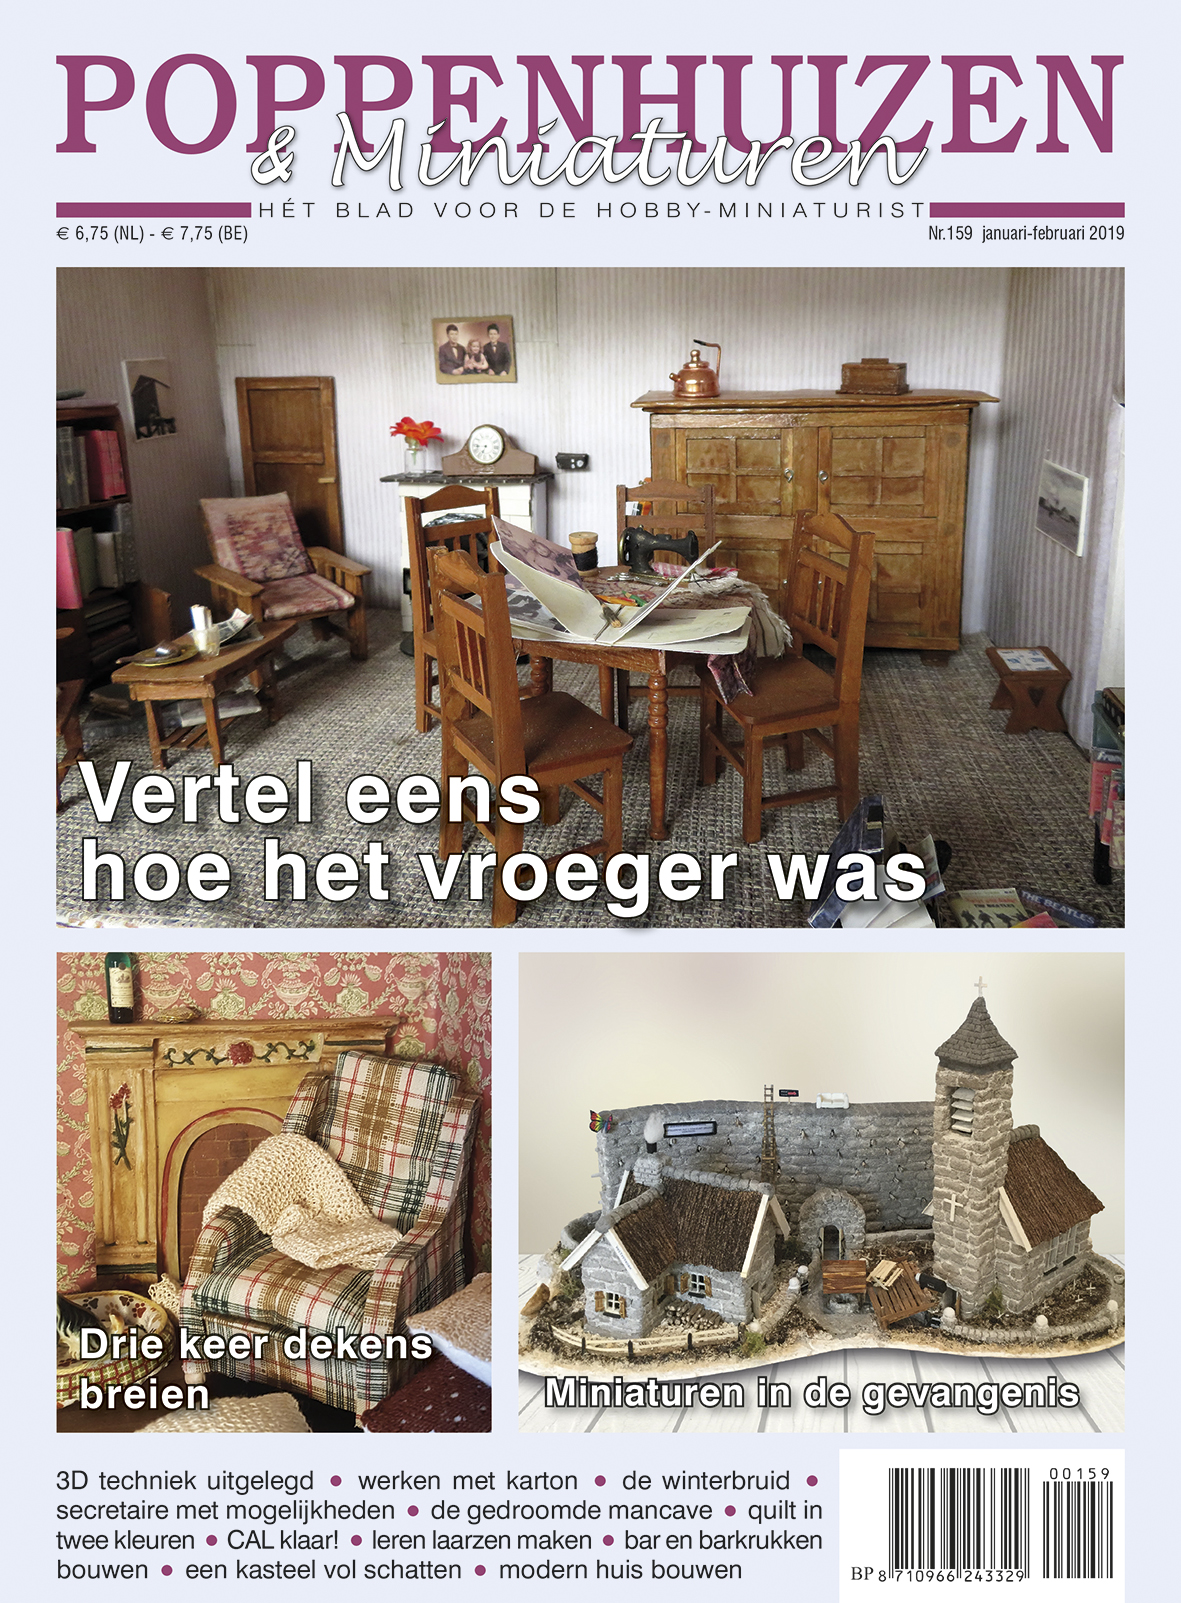 Beste Stip Media in Alkmaar | Communicatiebureau & uitgeverij|P&M # 159 DS-97